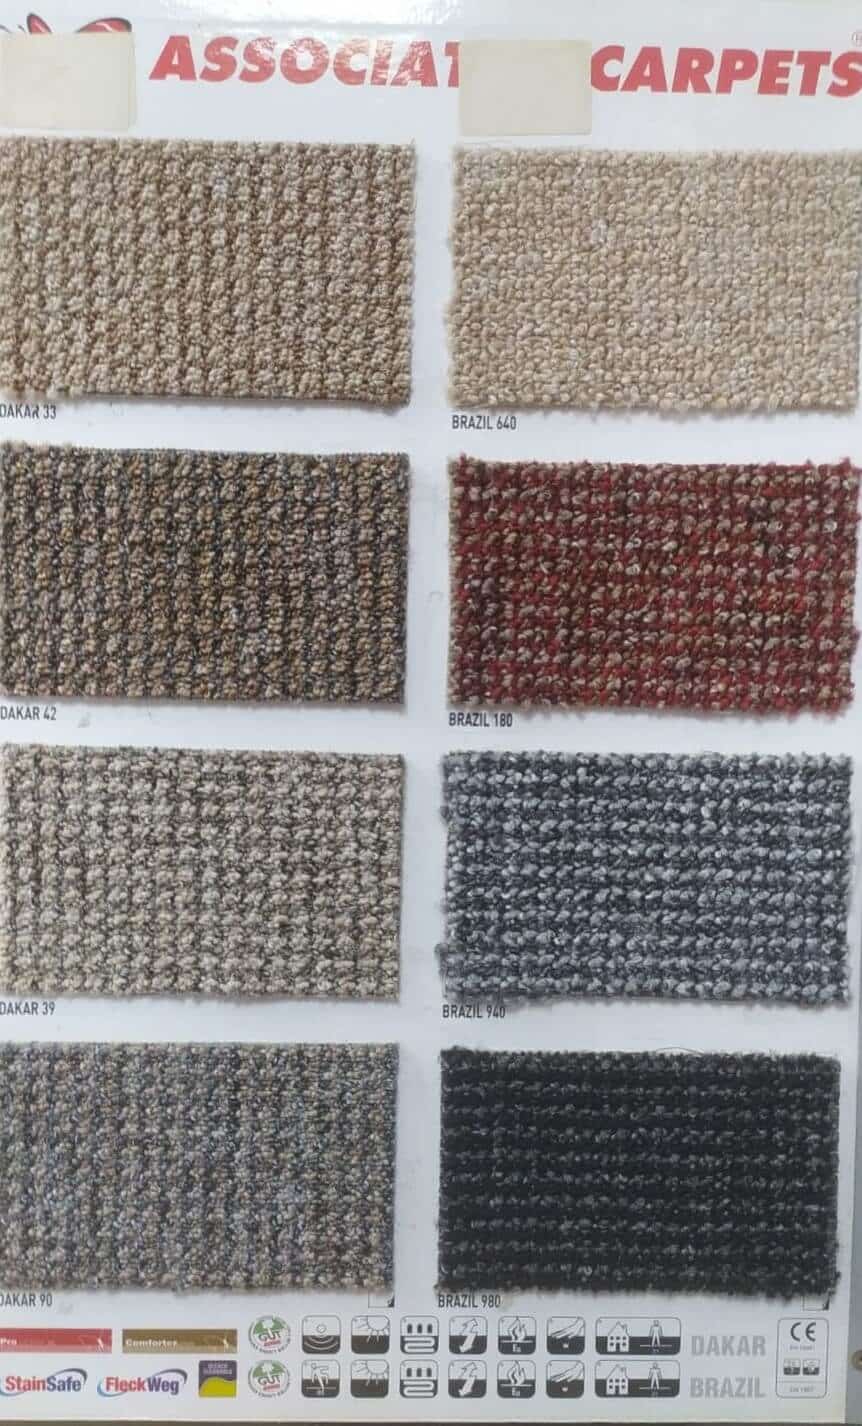 dakar brazil Associated carpet halifleks duvardan duvara hali